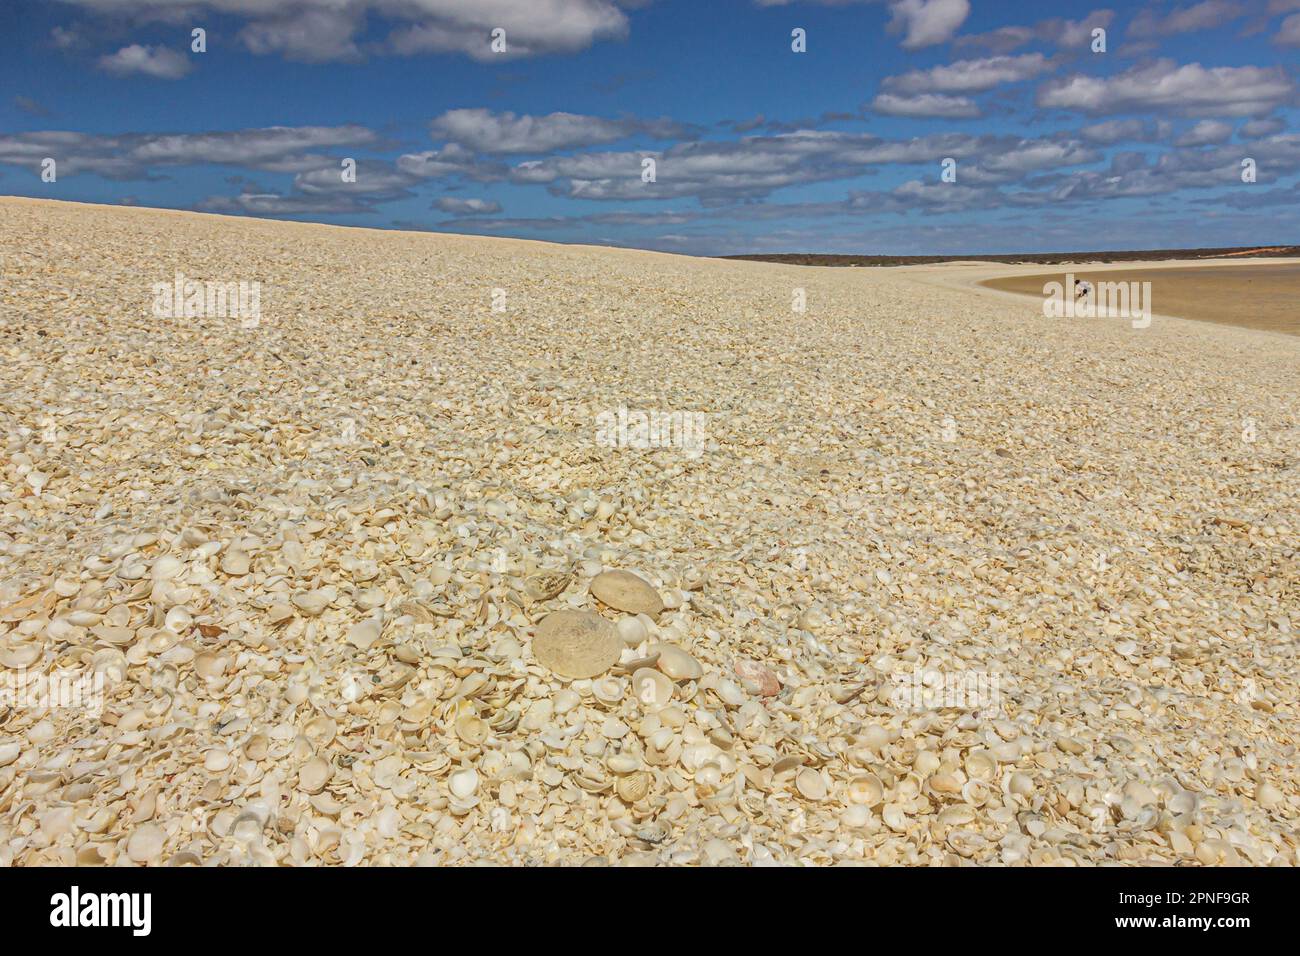 Ein Haufen Muscheln, hauptsächlich aus Cockle, der den Strand passend Shell Beach in Shark Bay in Westaustralien, Australien, nannte. Stockfoto